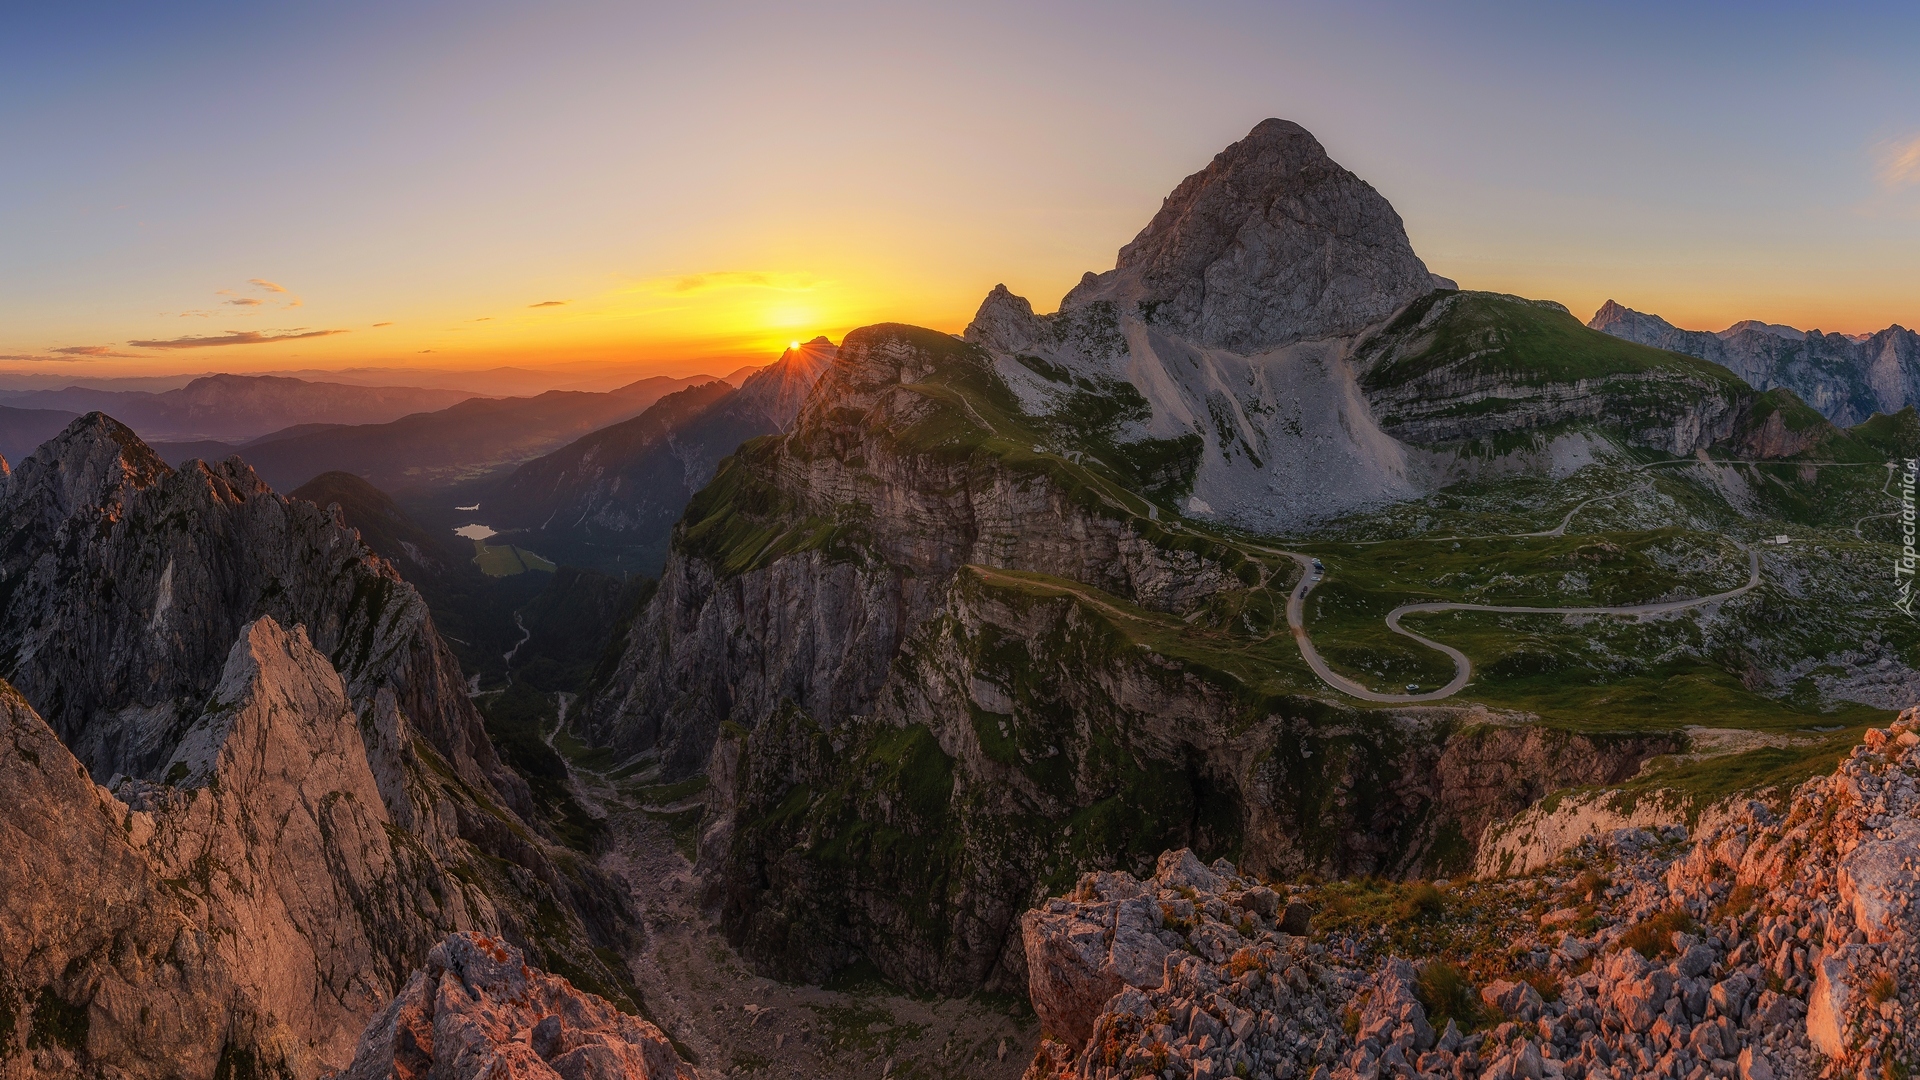 Góry, Góra Mangart, Skały, Droga, Wschód słońca, Alpy Julijskie, Słowenia